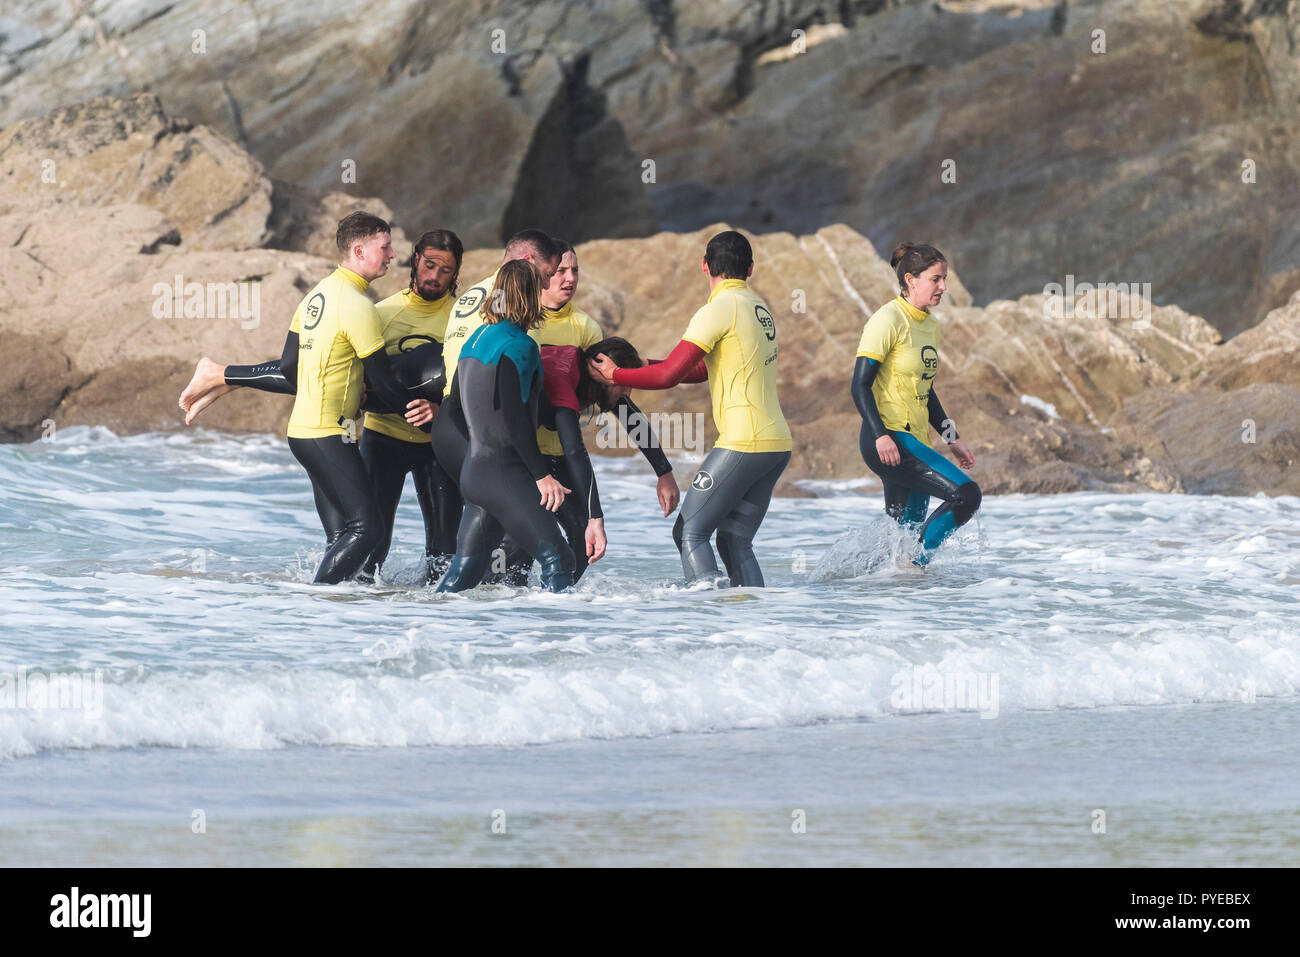 La pratique de l'extraction d'une victime des stagiaires de la mer au cours d'une plage surveillée du cours de formation auprès de la plage de Fistral à Newquay en Cornouailles. Banque D'Images